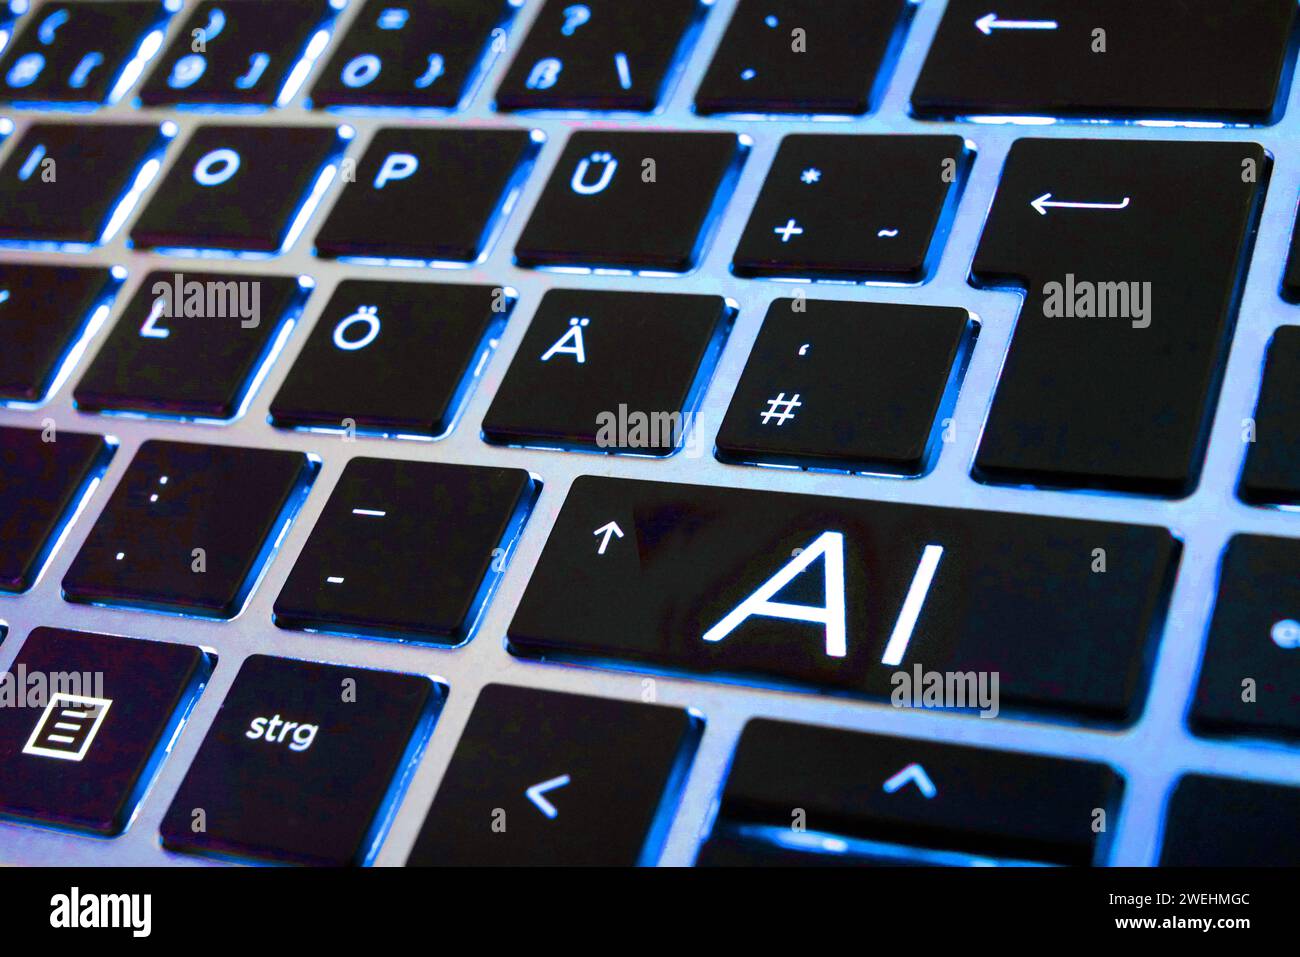 FOTOMONTAGE - Artificial Intelligence, Künstliche Intelligenz. Nahaufnahme einer Laptop-Tastatur mit einer AI-Taste *** FOTOMONTAGE Artificial Intelligence, Artificial Intelligence Close-up of a laptop keyboard with an AI key Stock Photo